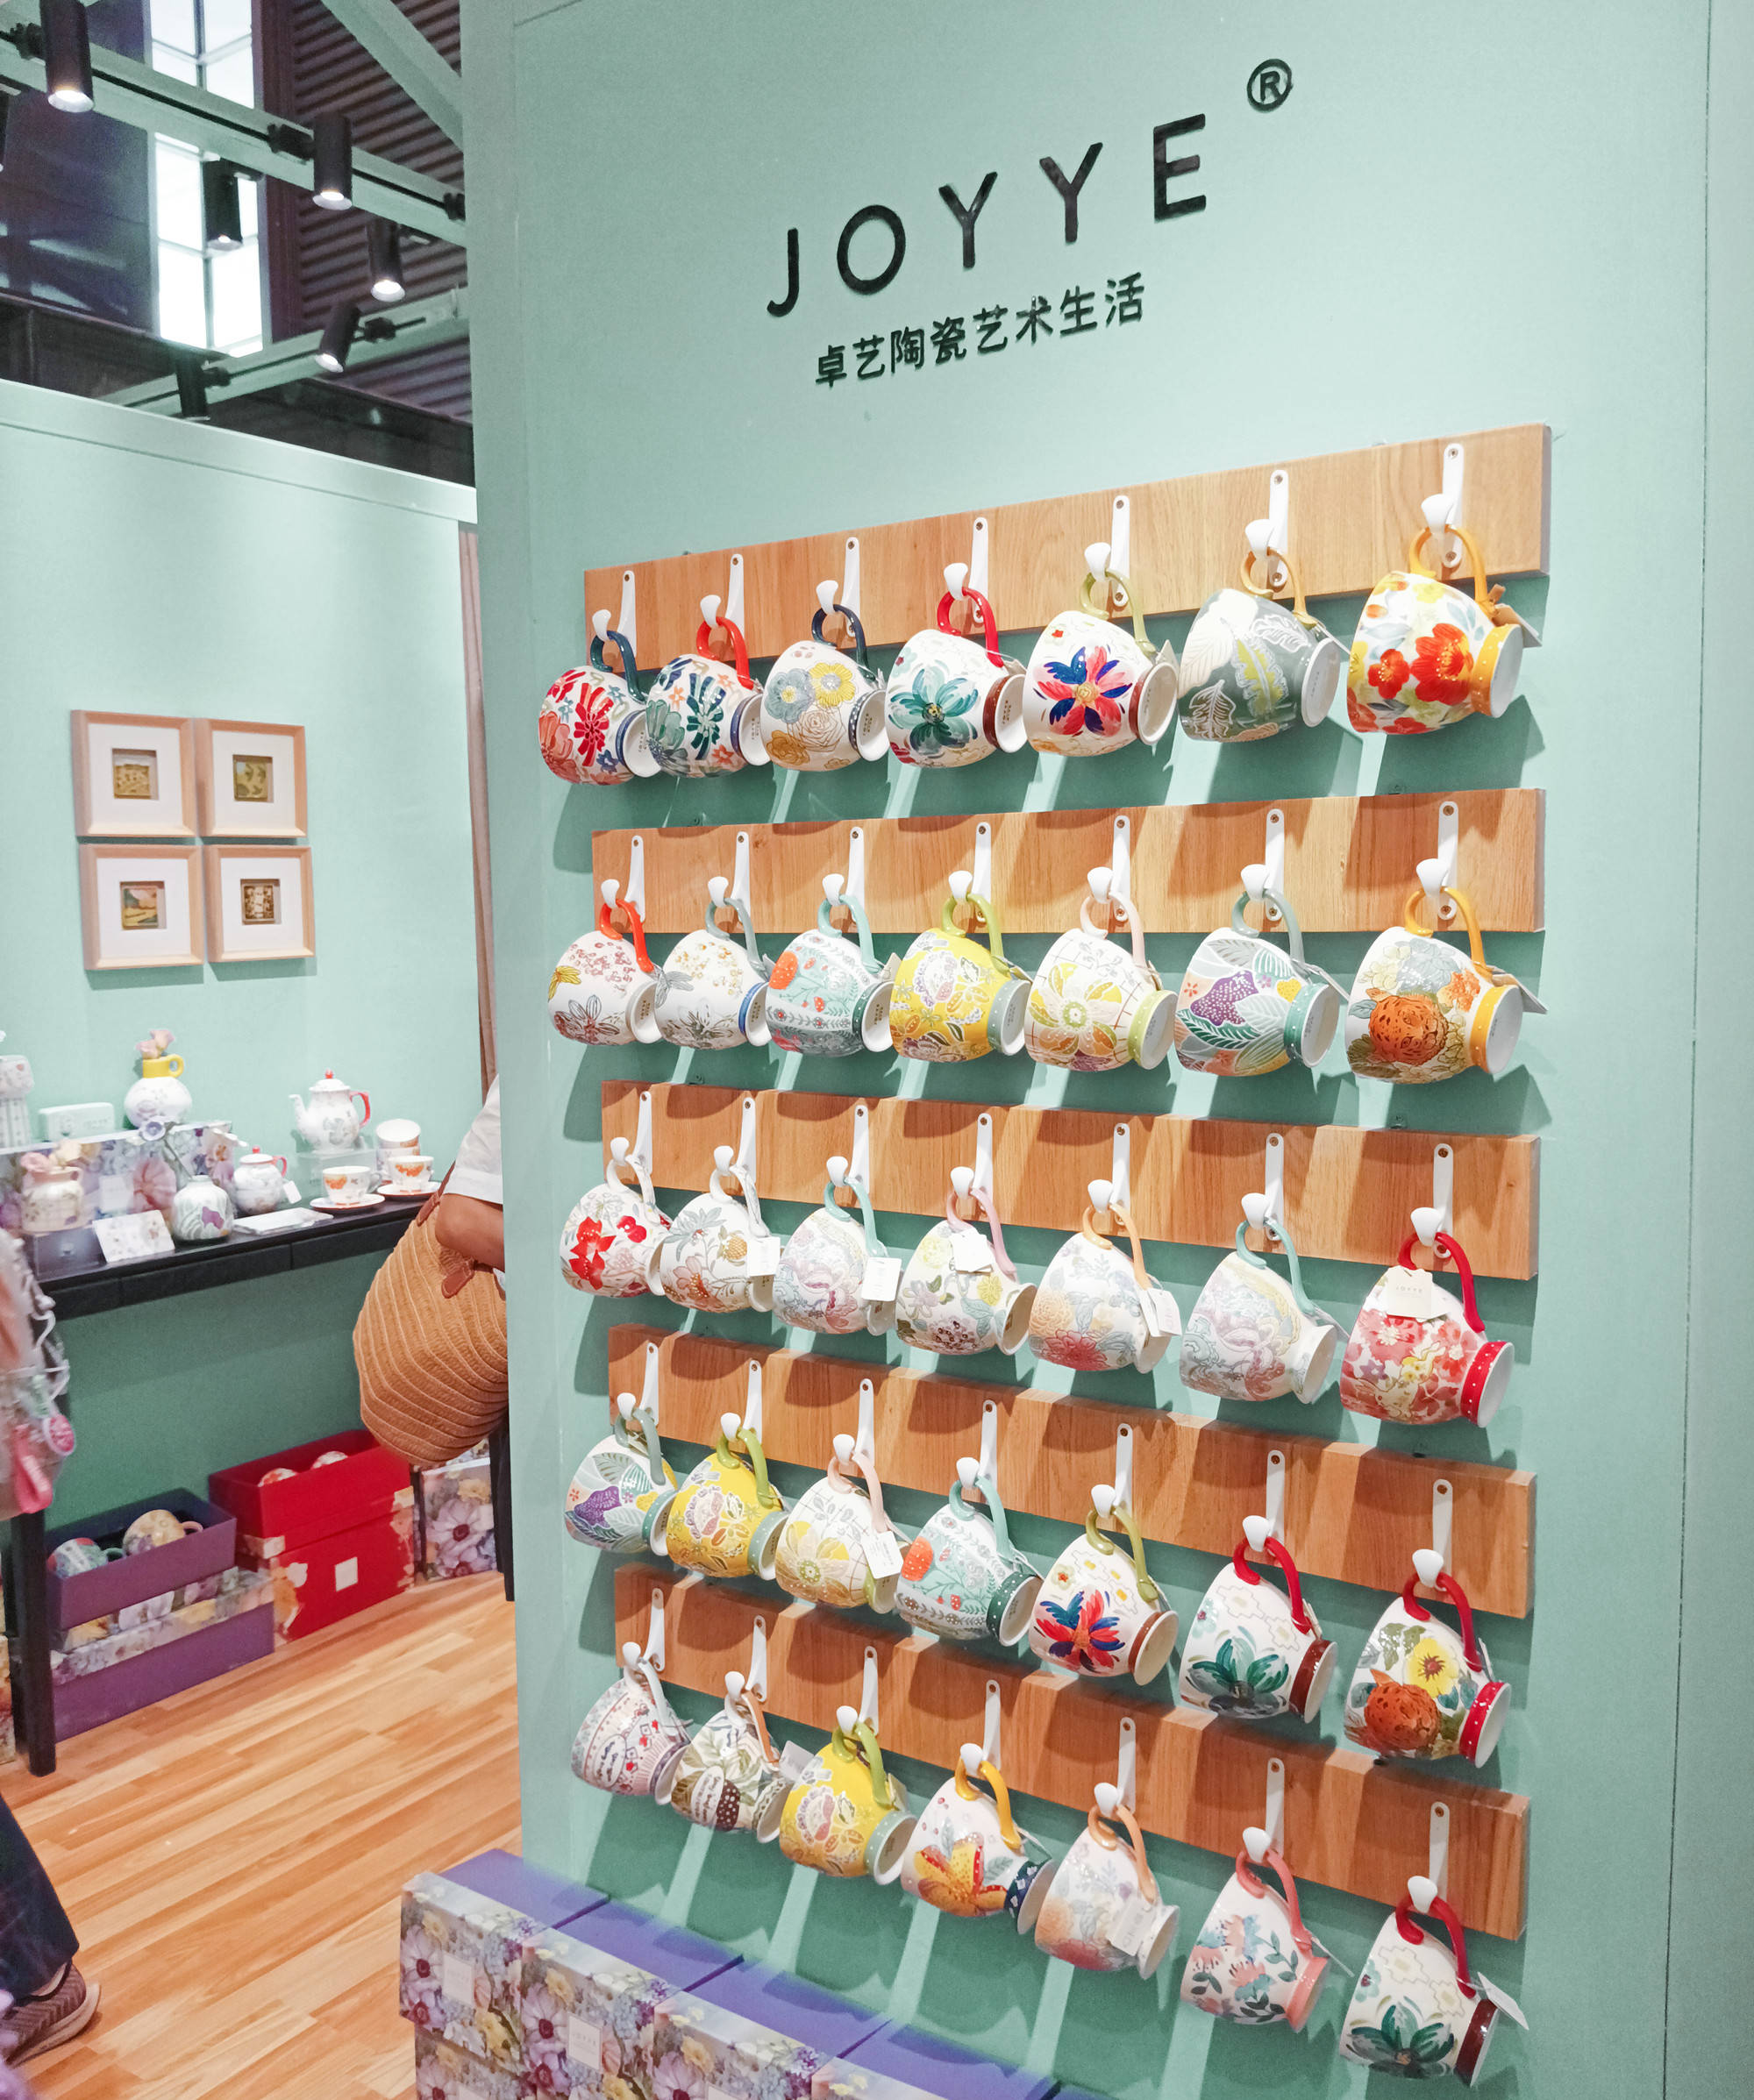 第12届上海国际尚品家居展，JOYYE卓艺陶瓷艺术生活品牌携重磅新品惊艳亮相 